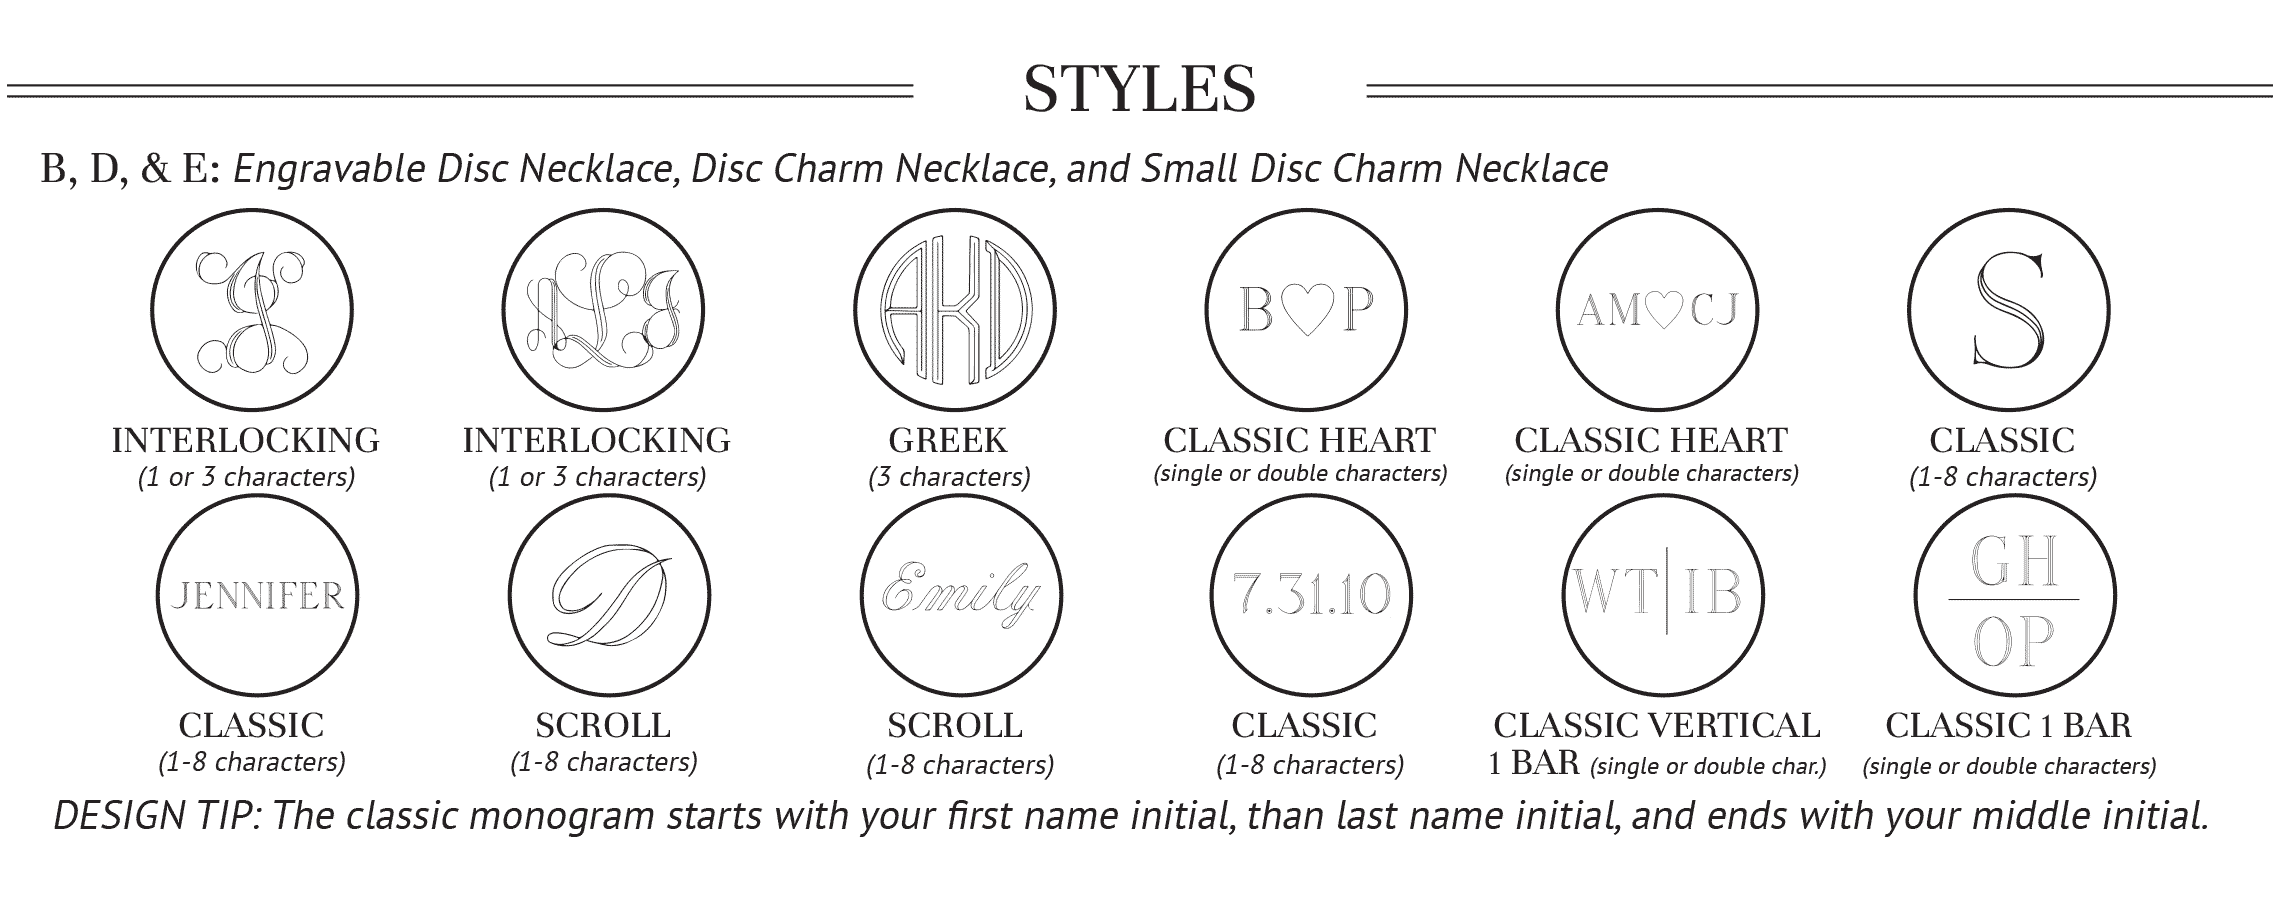 Styles for SS-EN-005